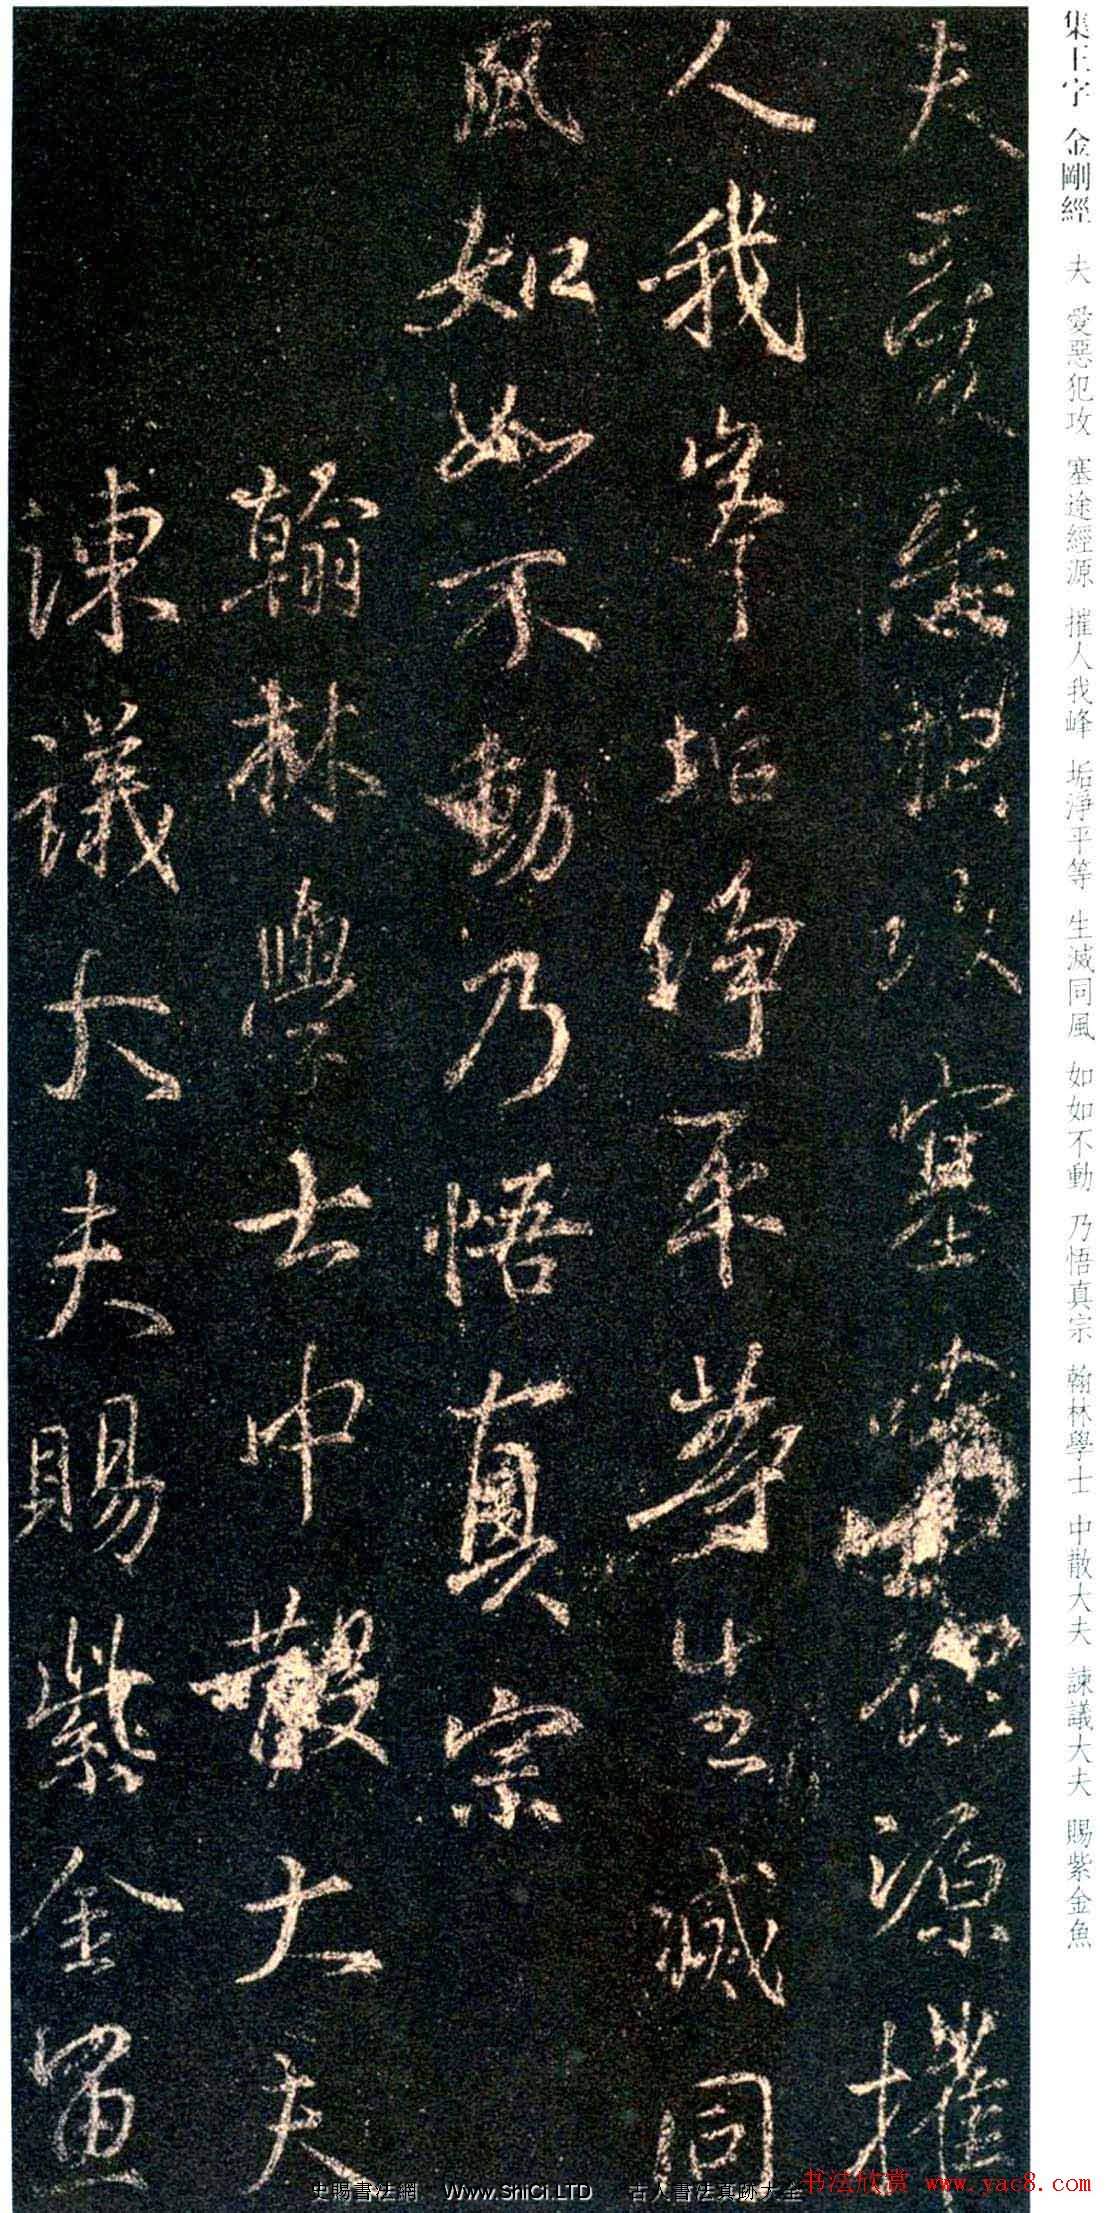 唐代の行書の碑文「新集王羲之書金剛経」（全部で111枚の写真）